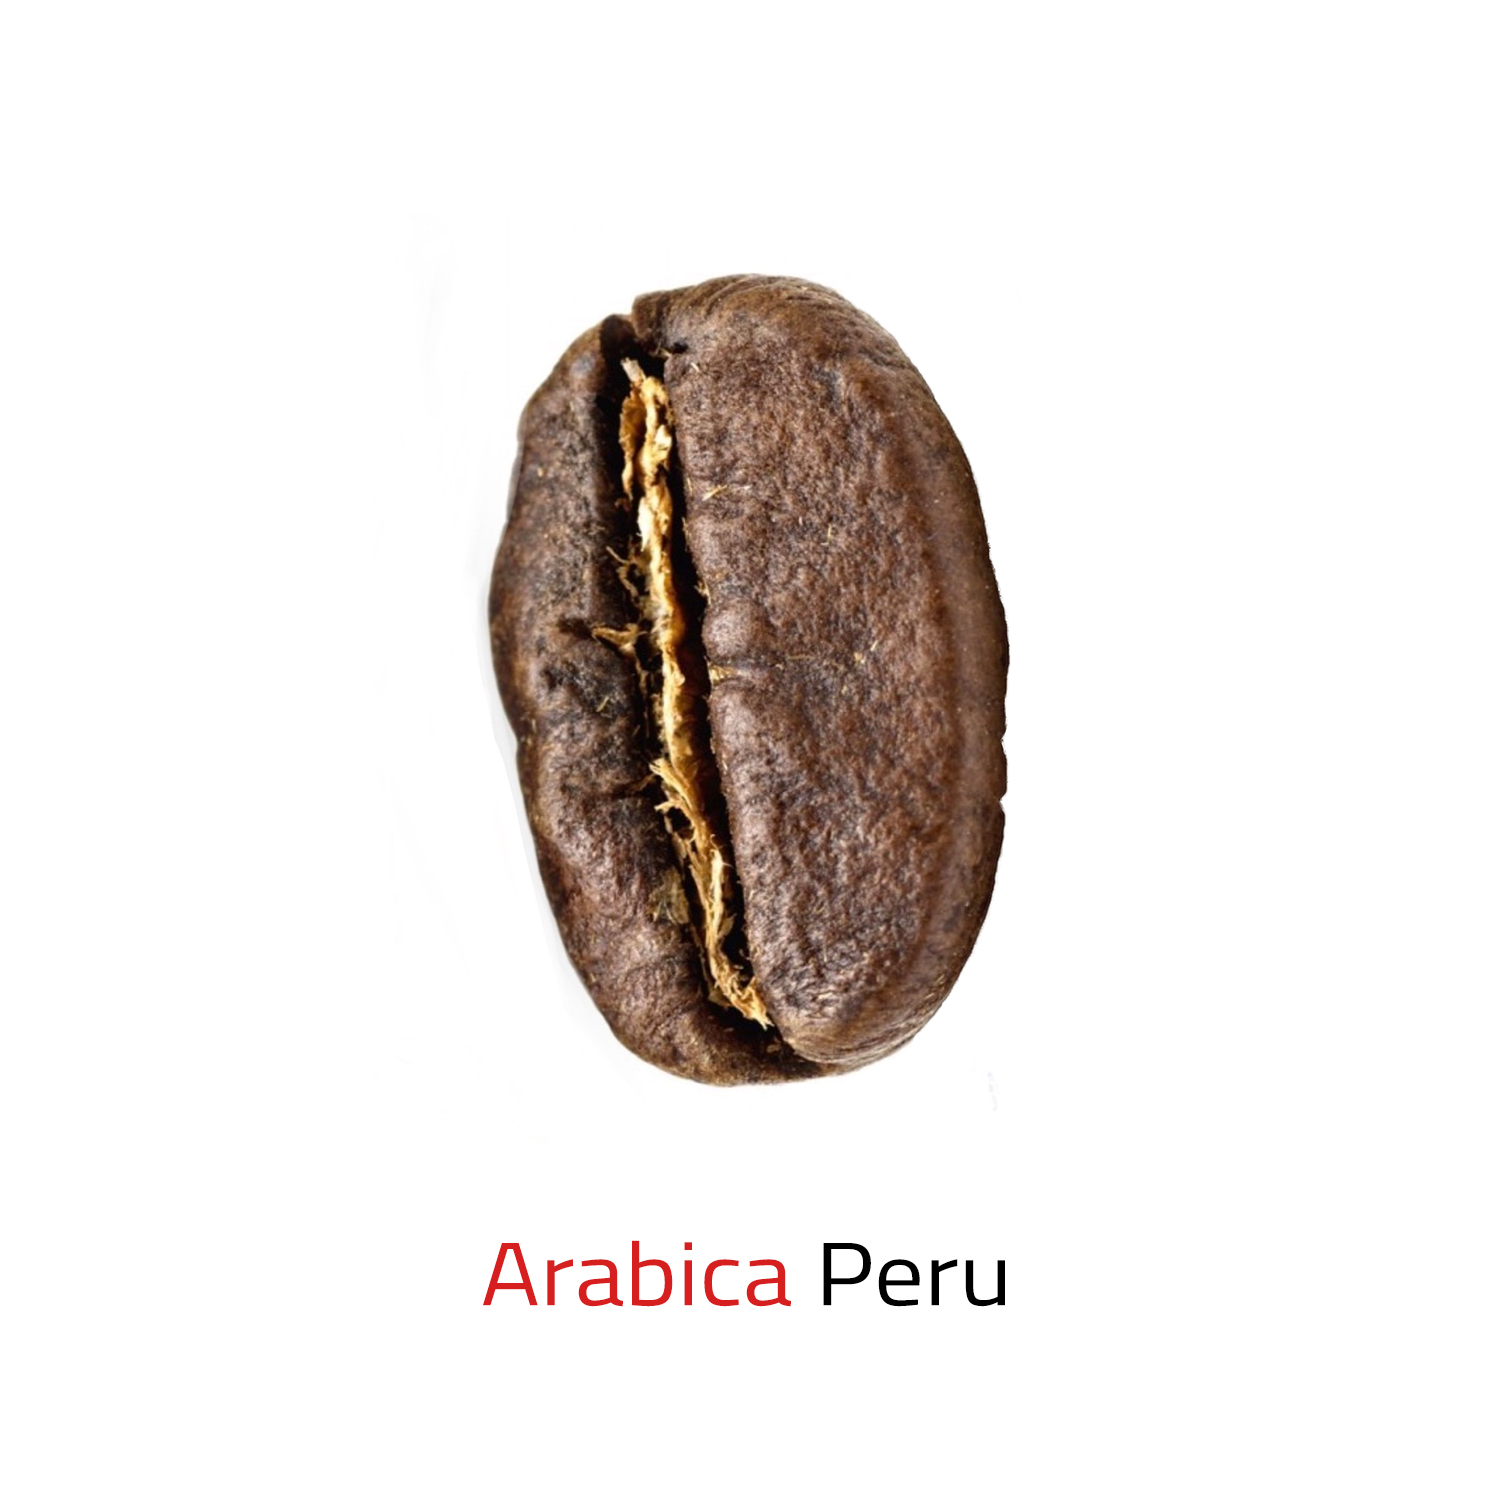 Arabica Peru 250g